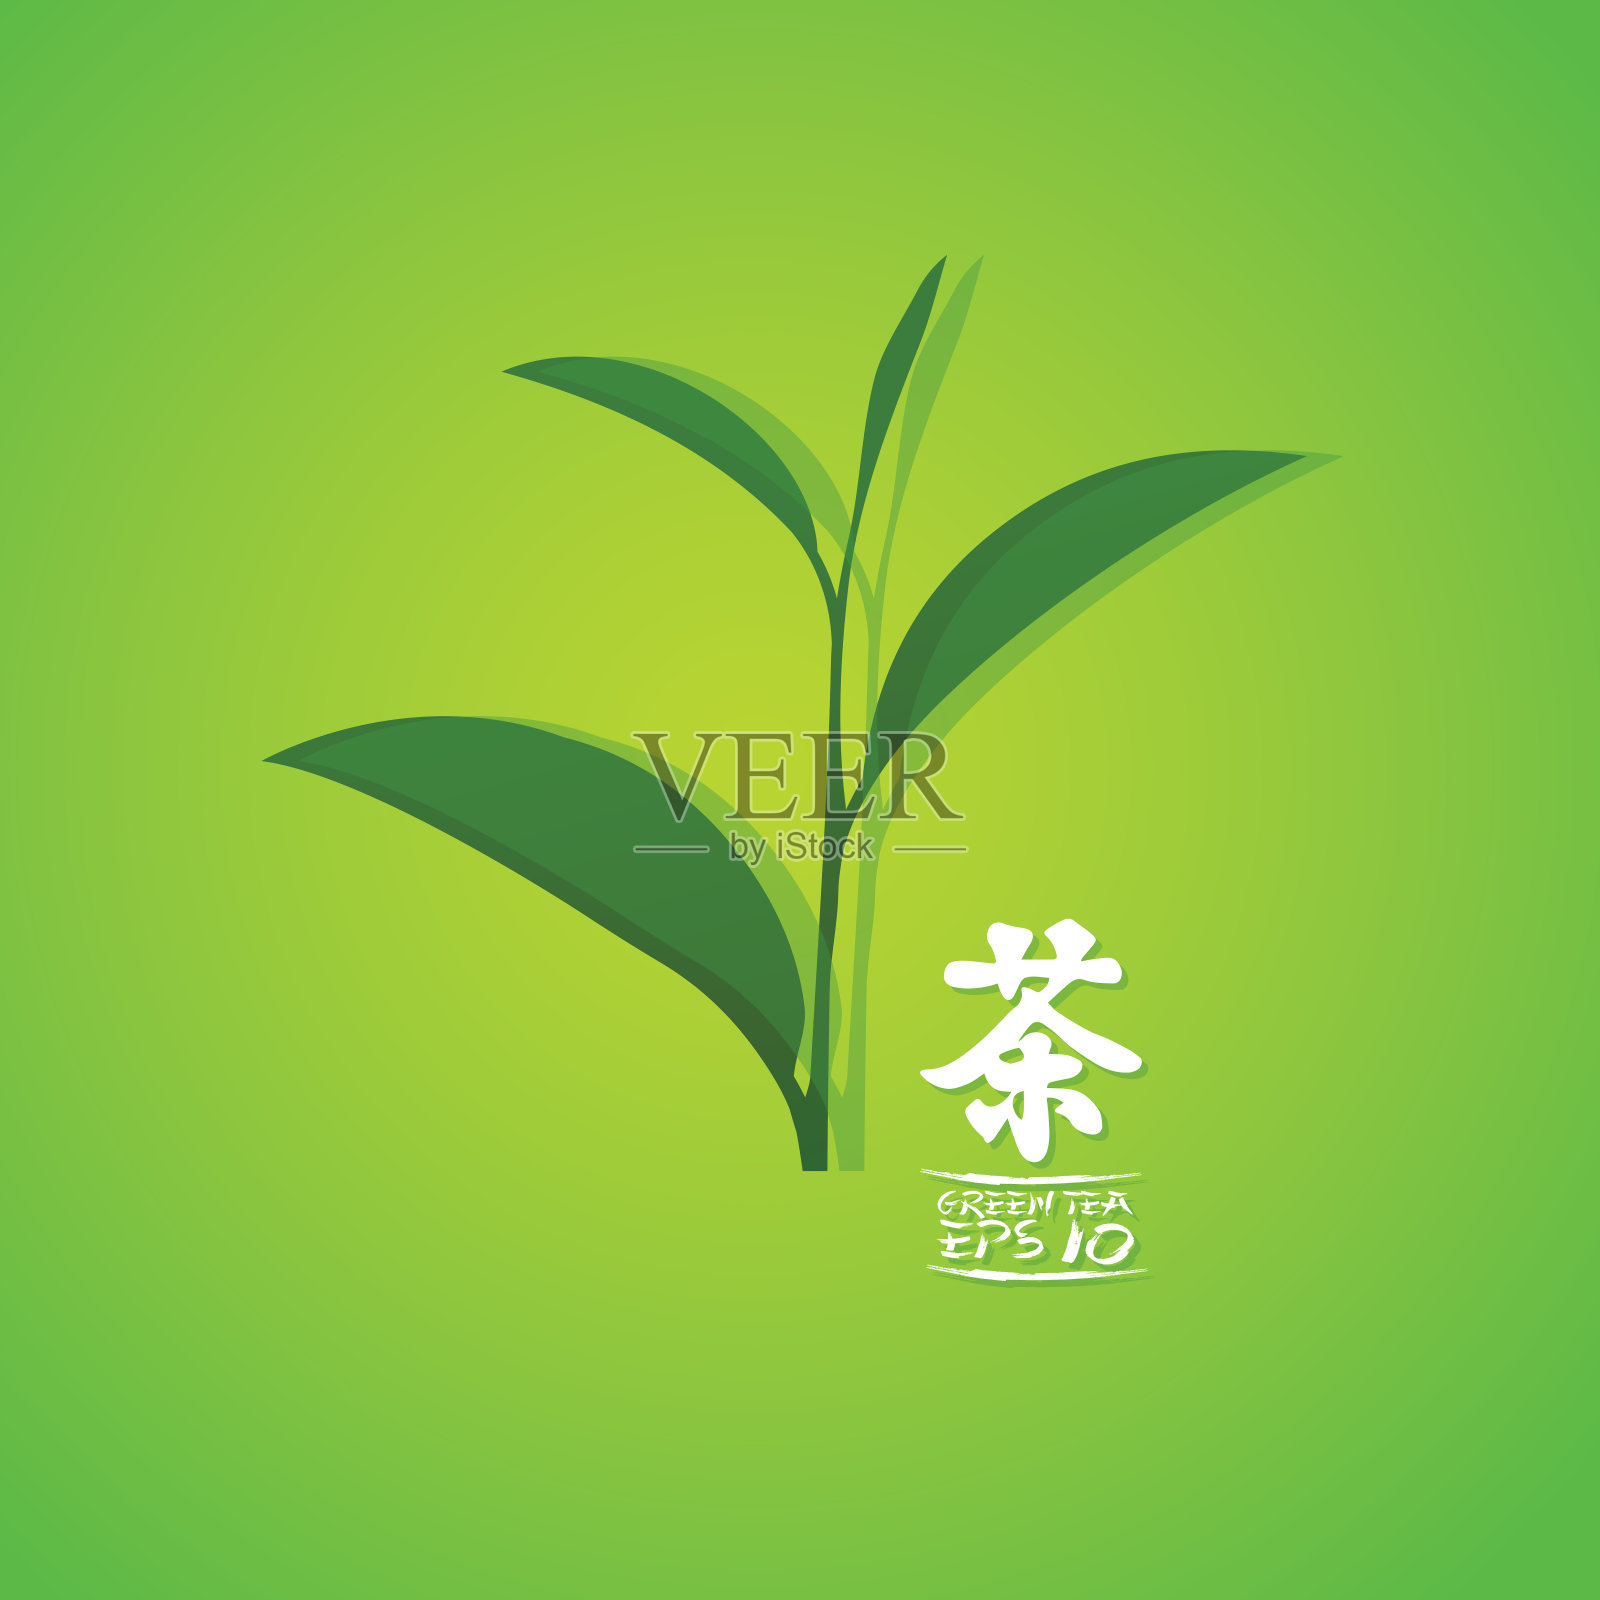 优质绿茶为健康载体。插画图片素材